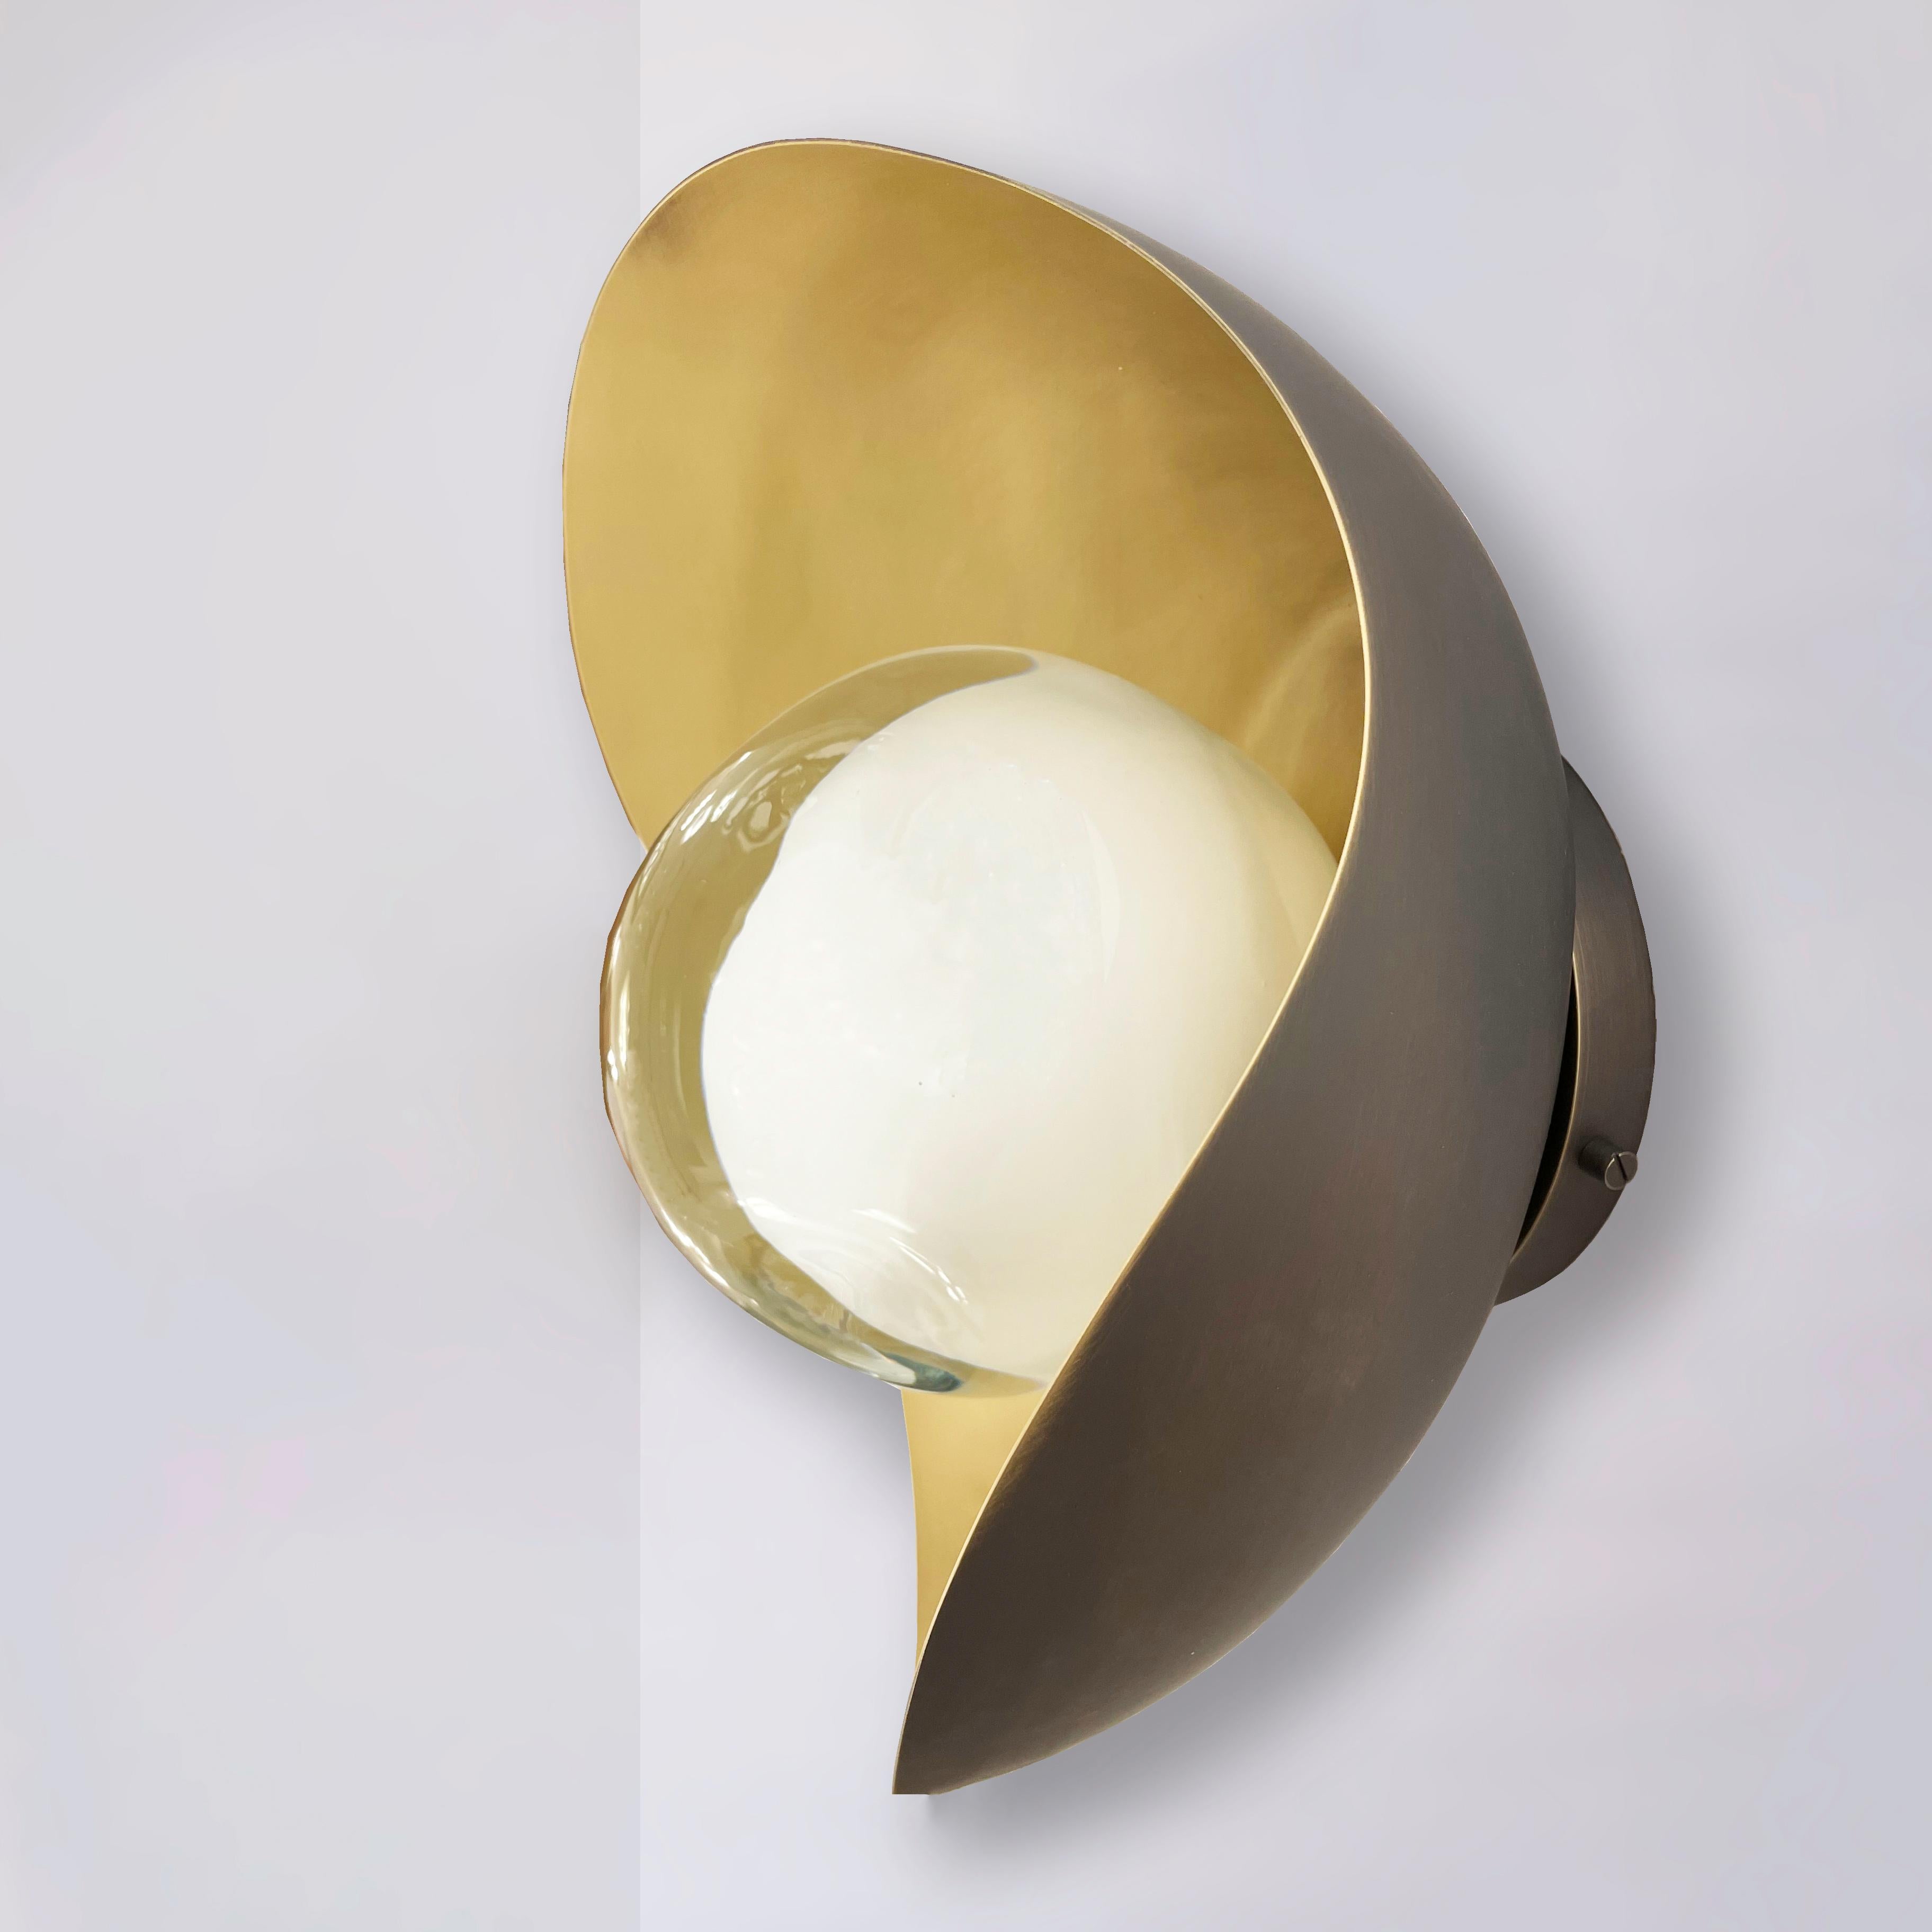 Die Wandleuchte Perla besteht aus einer organischen Messingschale, in die unser in der Toskana mundgeblasenes Sfera-Glas eingebettet ist. Die ersten Bilder zeigen die Leuchte mit einer Innenseite aus satiniertem Messing und einer Außenverkleidung